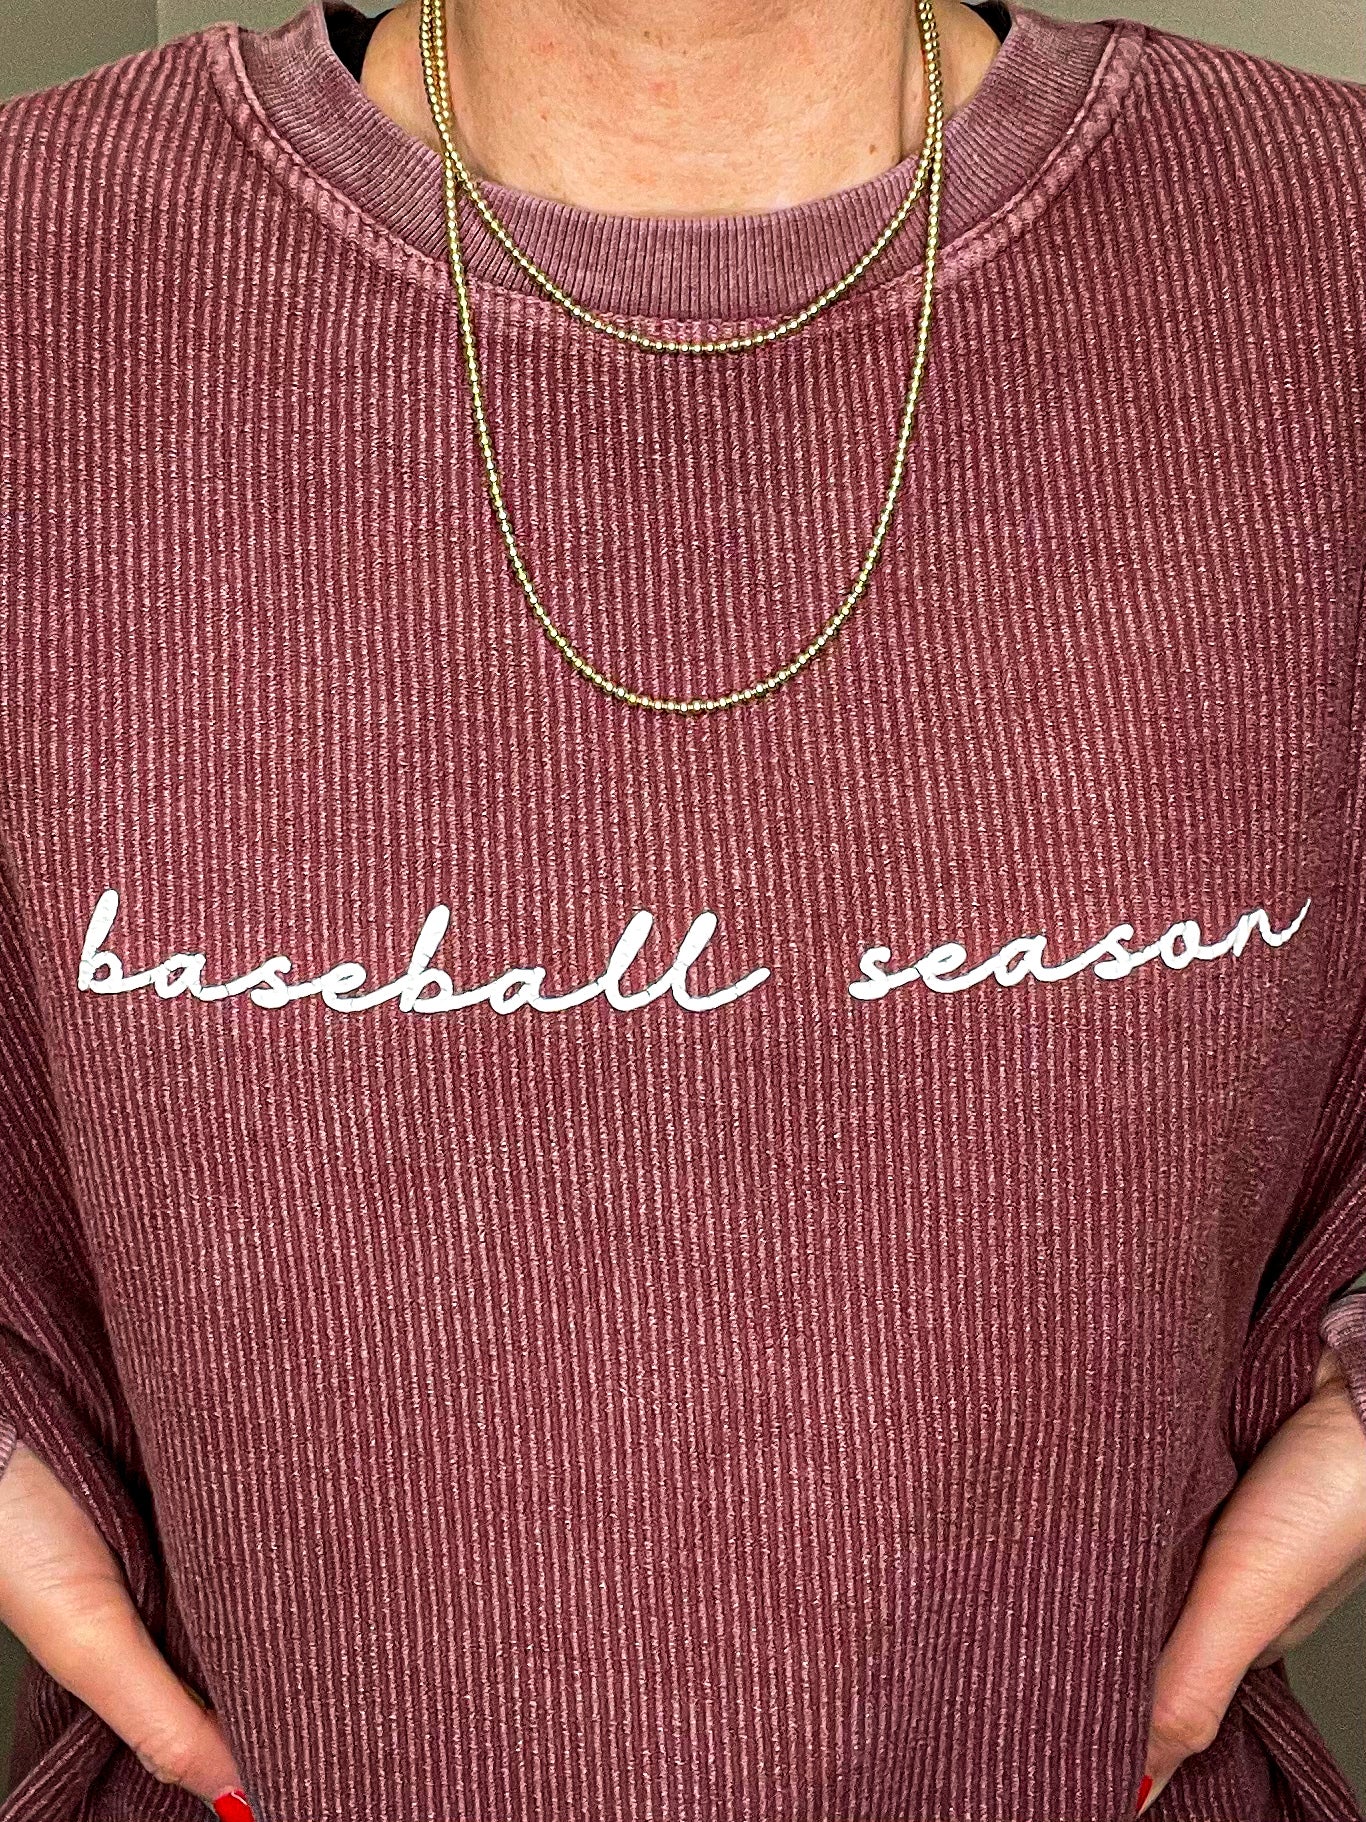 Baseball Season Corded Sweatshirt